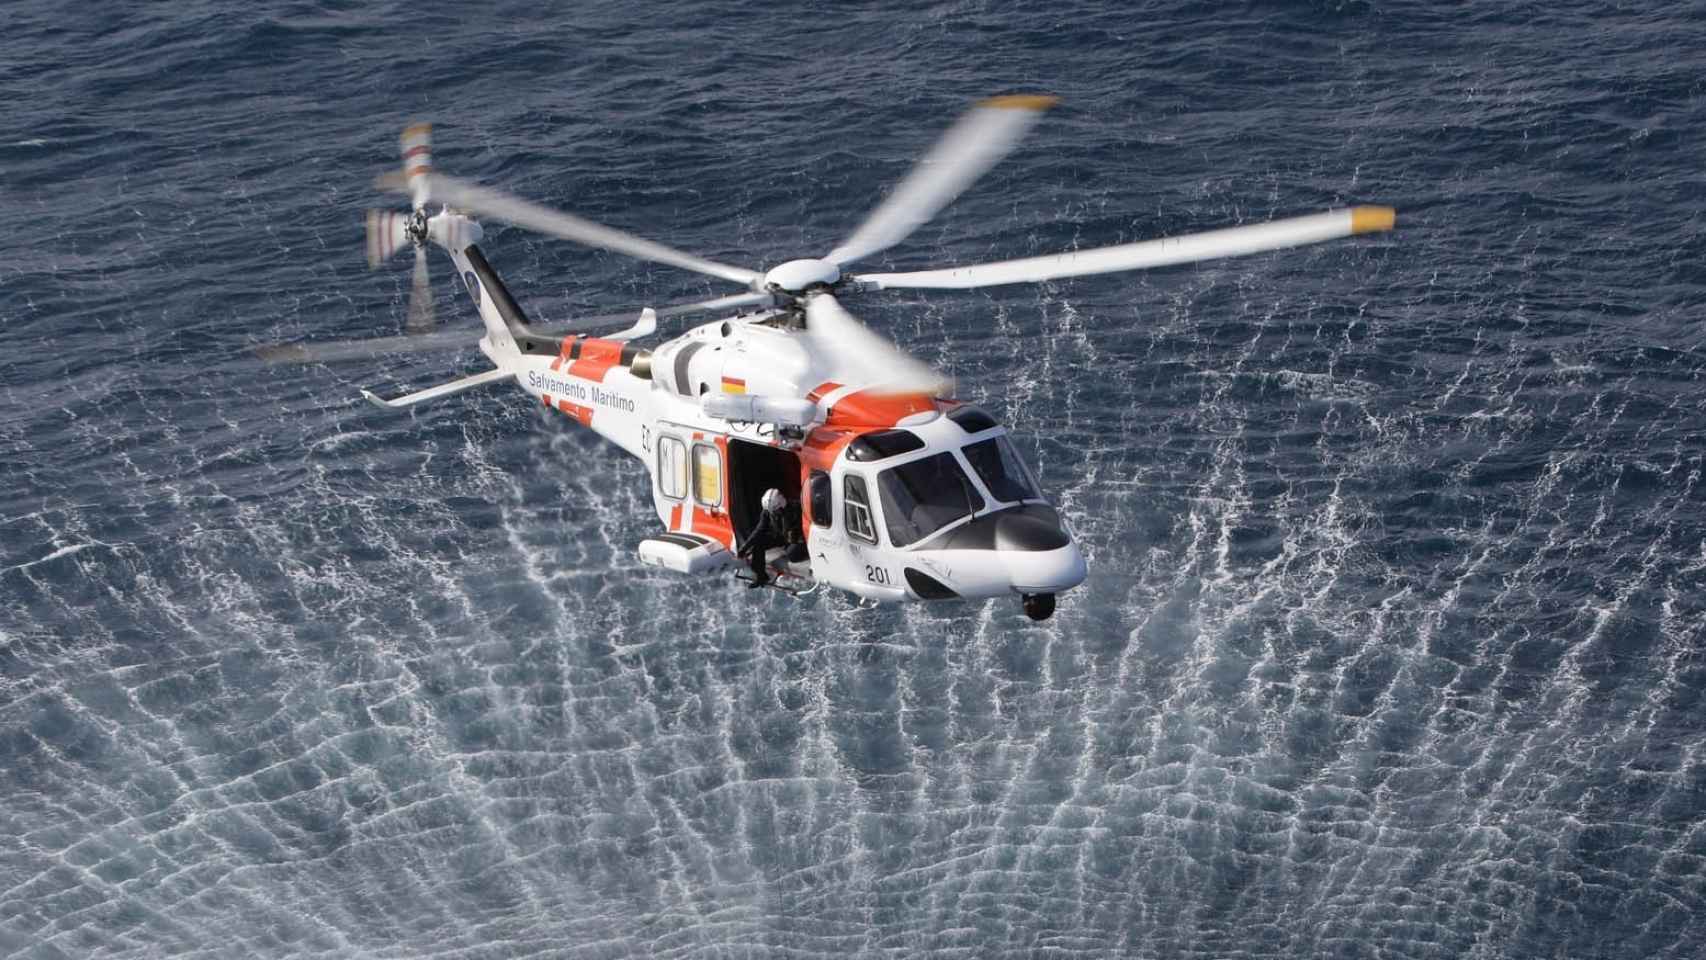 Helicóptero Helimer 201 de Salvamento Marítimo / CEDIDO POR SALVAMENTO MARÍTIMO